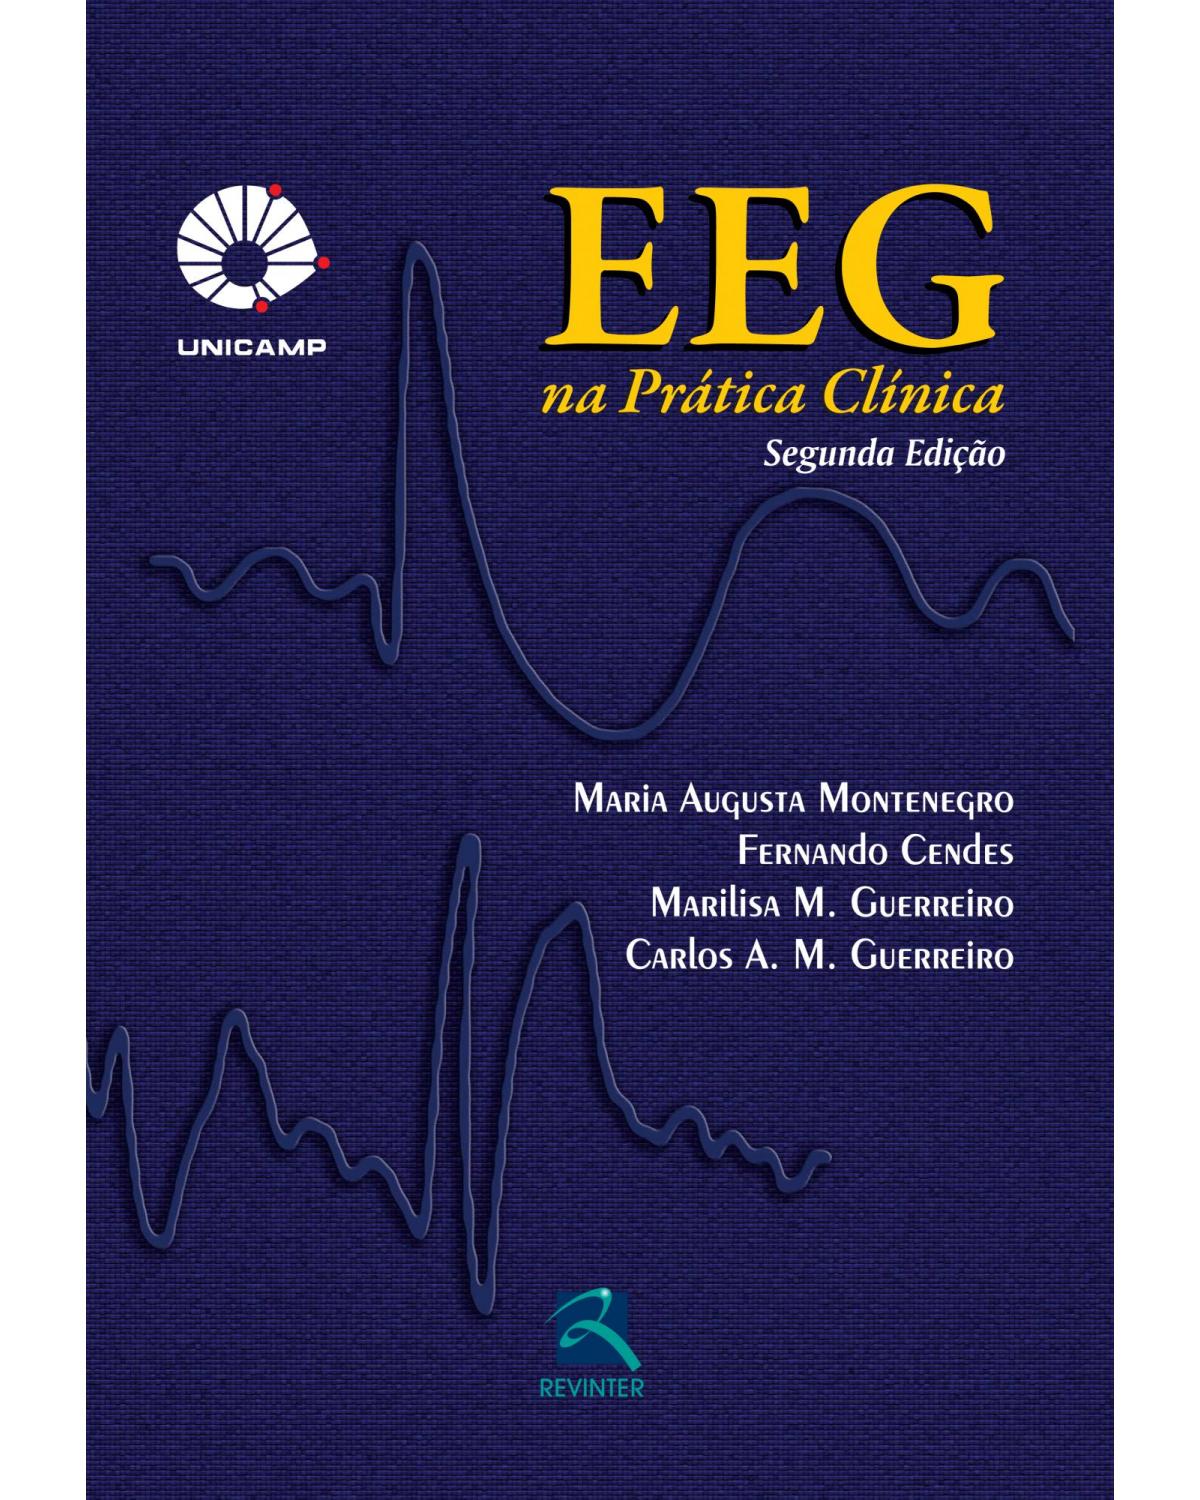 EEG na prática clinica - 2ª Edição | 2012